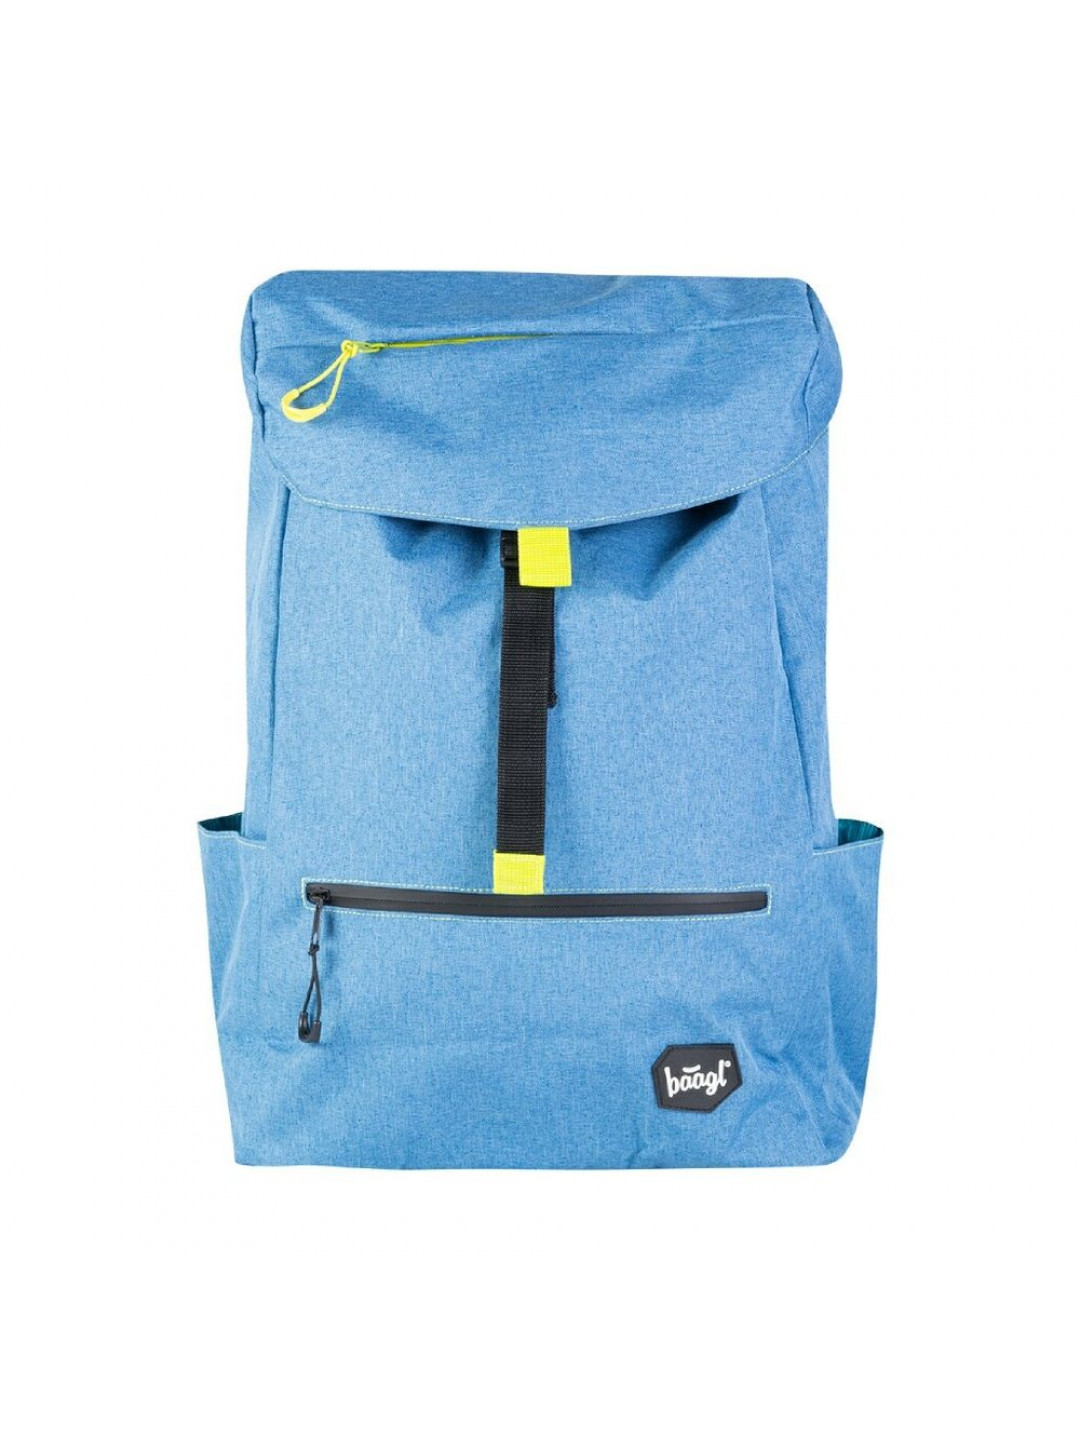 BAAGL Studentský batoh Blue 22 l